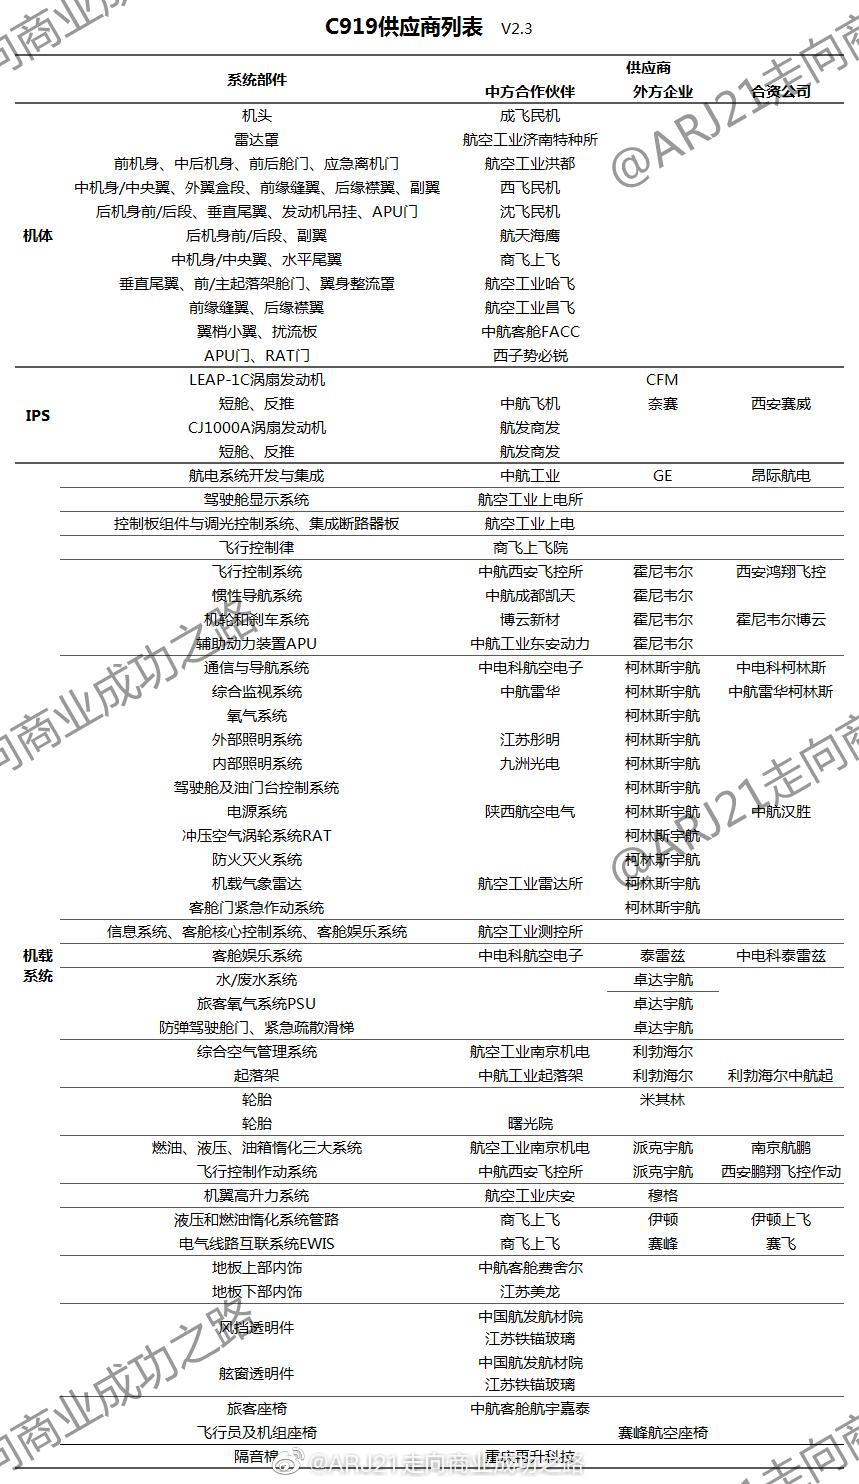 目前C919供应商列表，图自微博：ARJ21走向商业成功之路